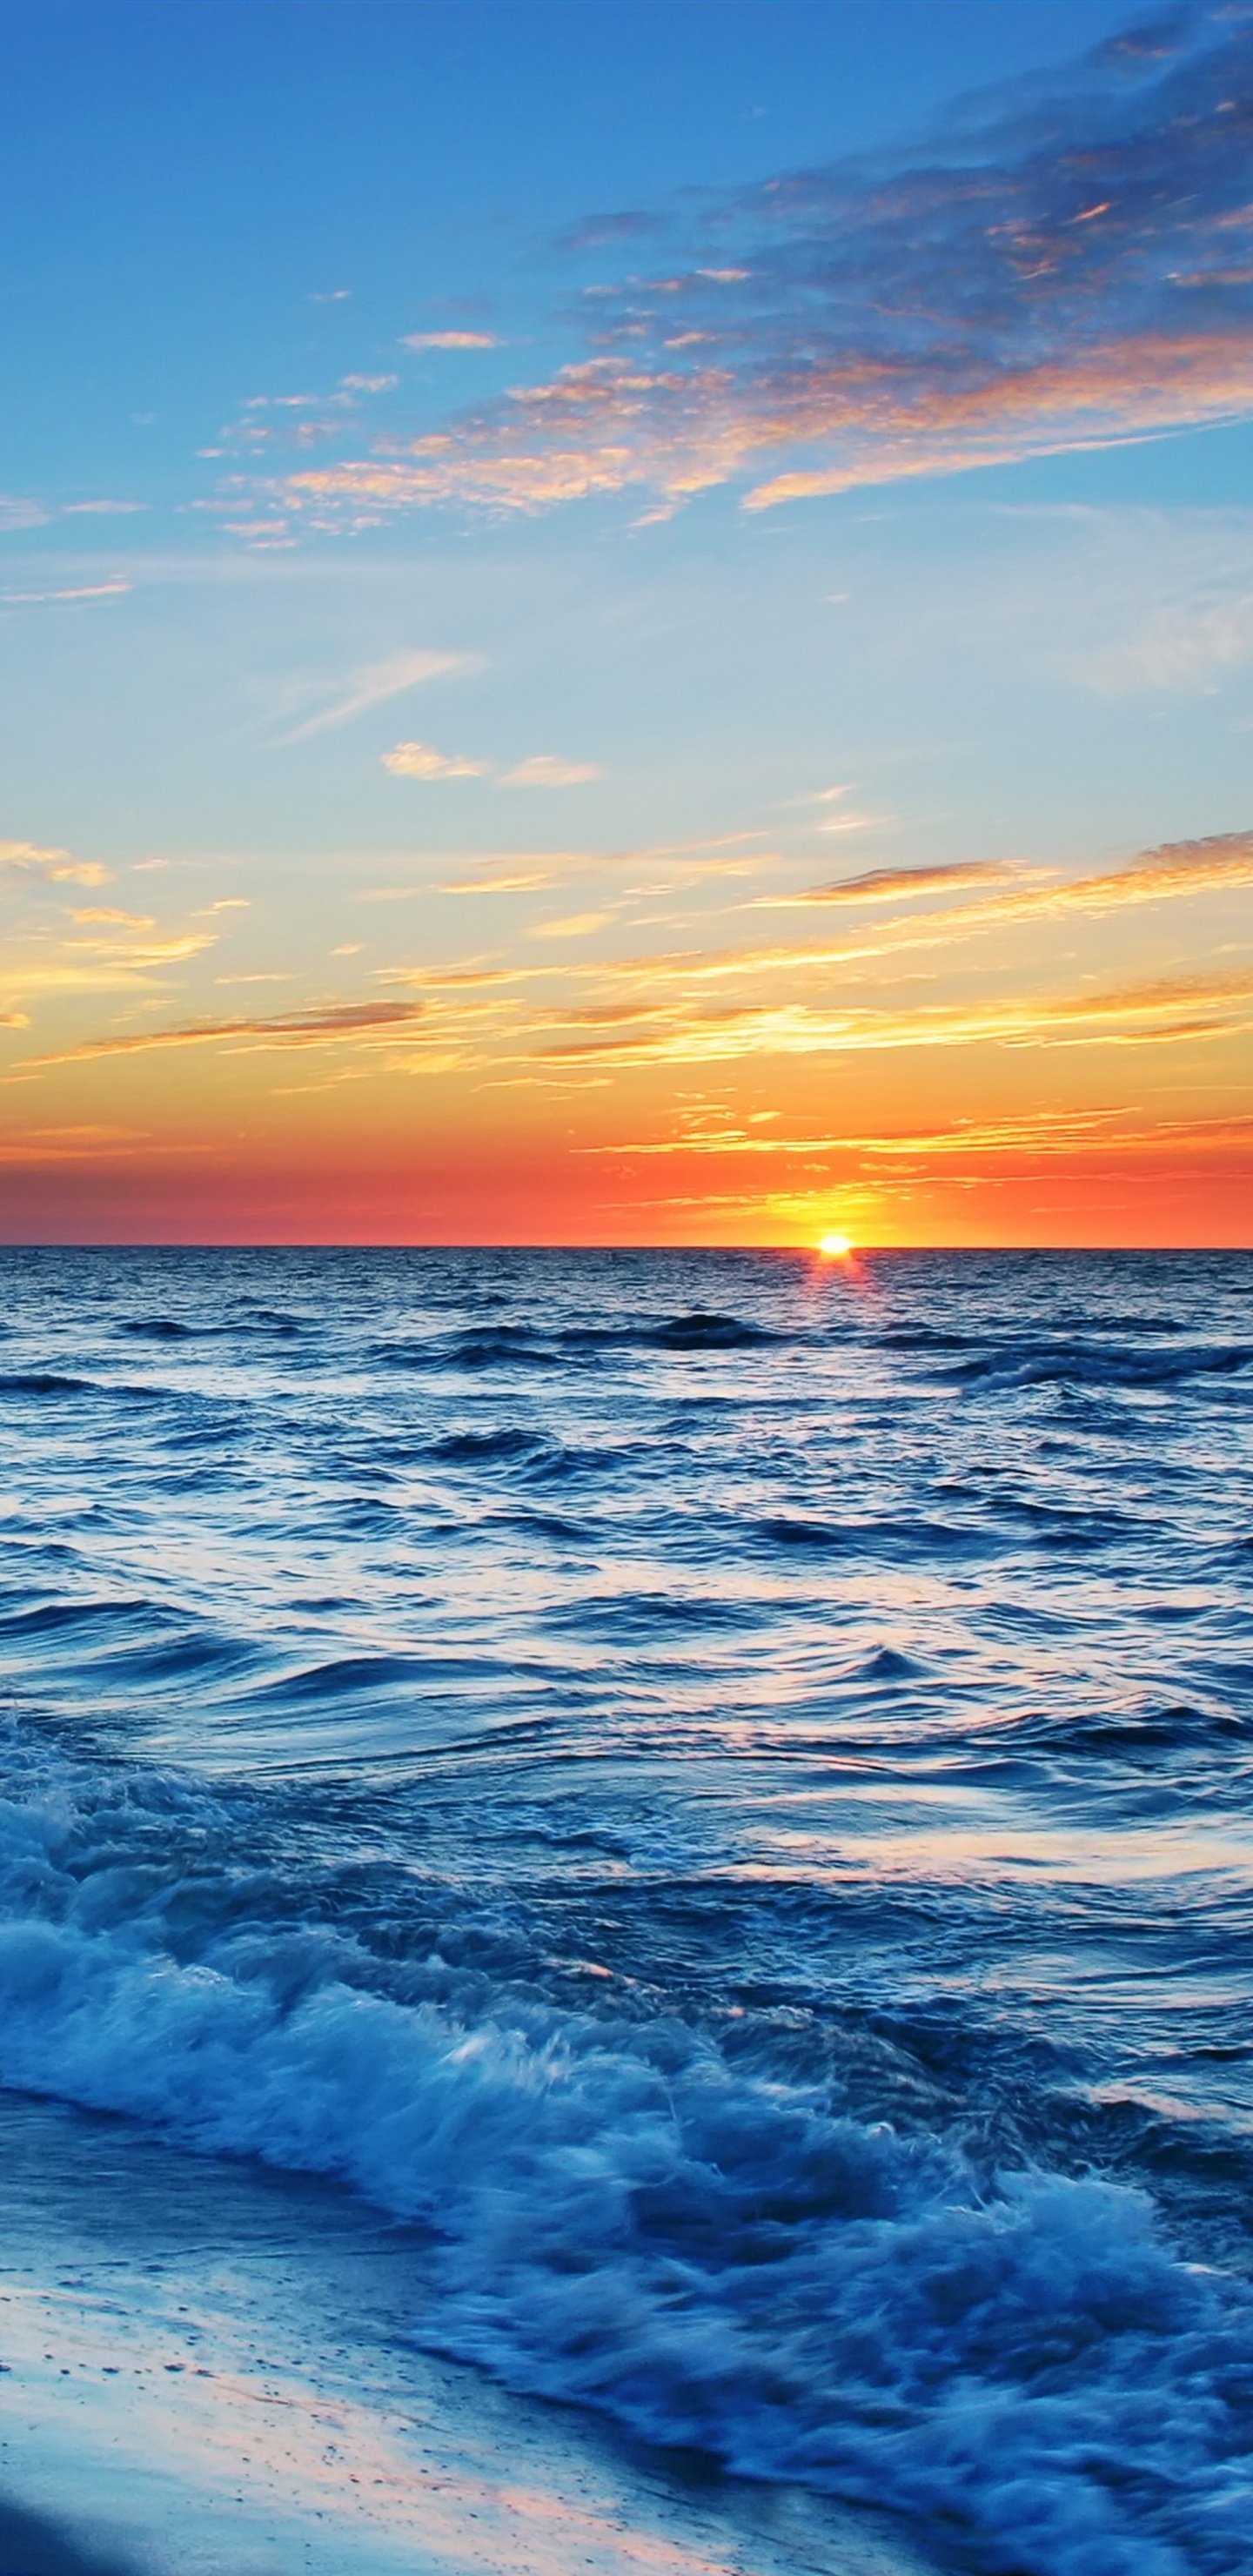 Meereswellen, Die Während Des Sonnenuntergangs an Land Krachen. Wallpaper in 1440x2960 Resolution